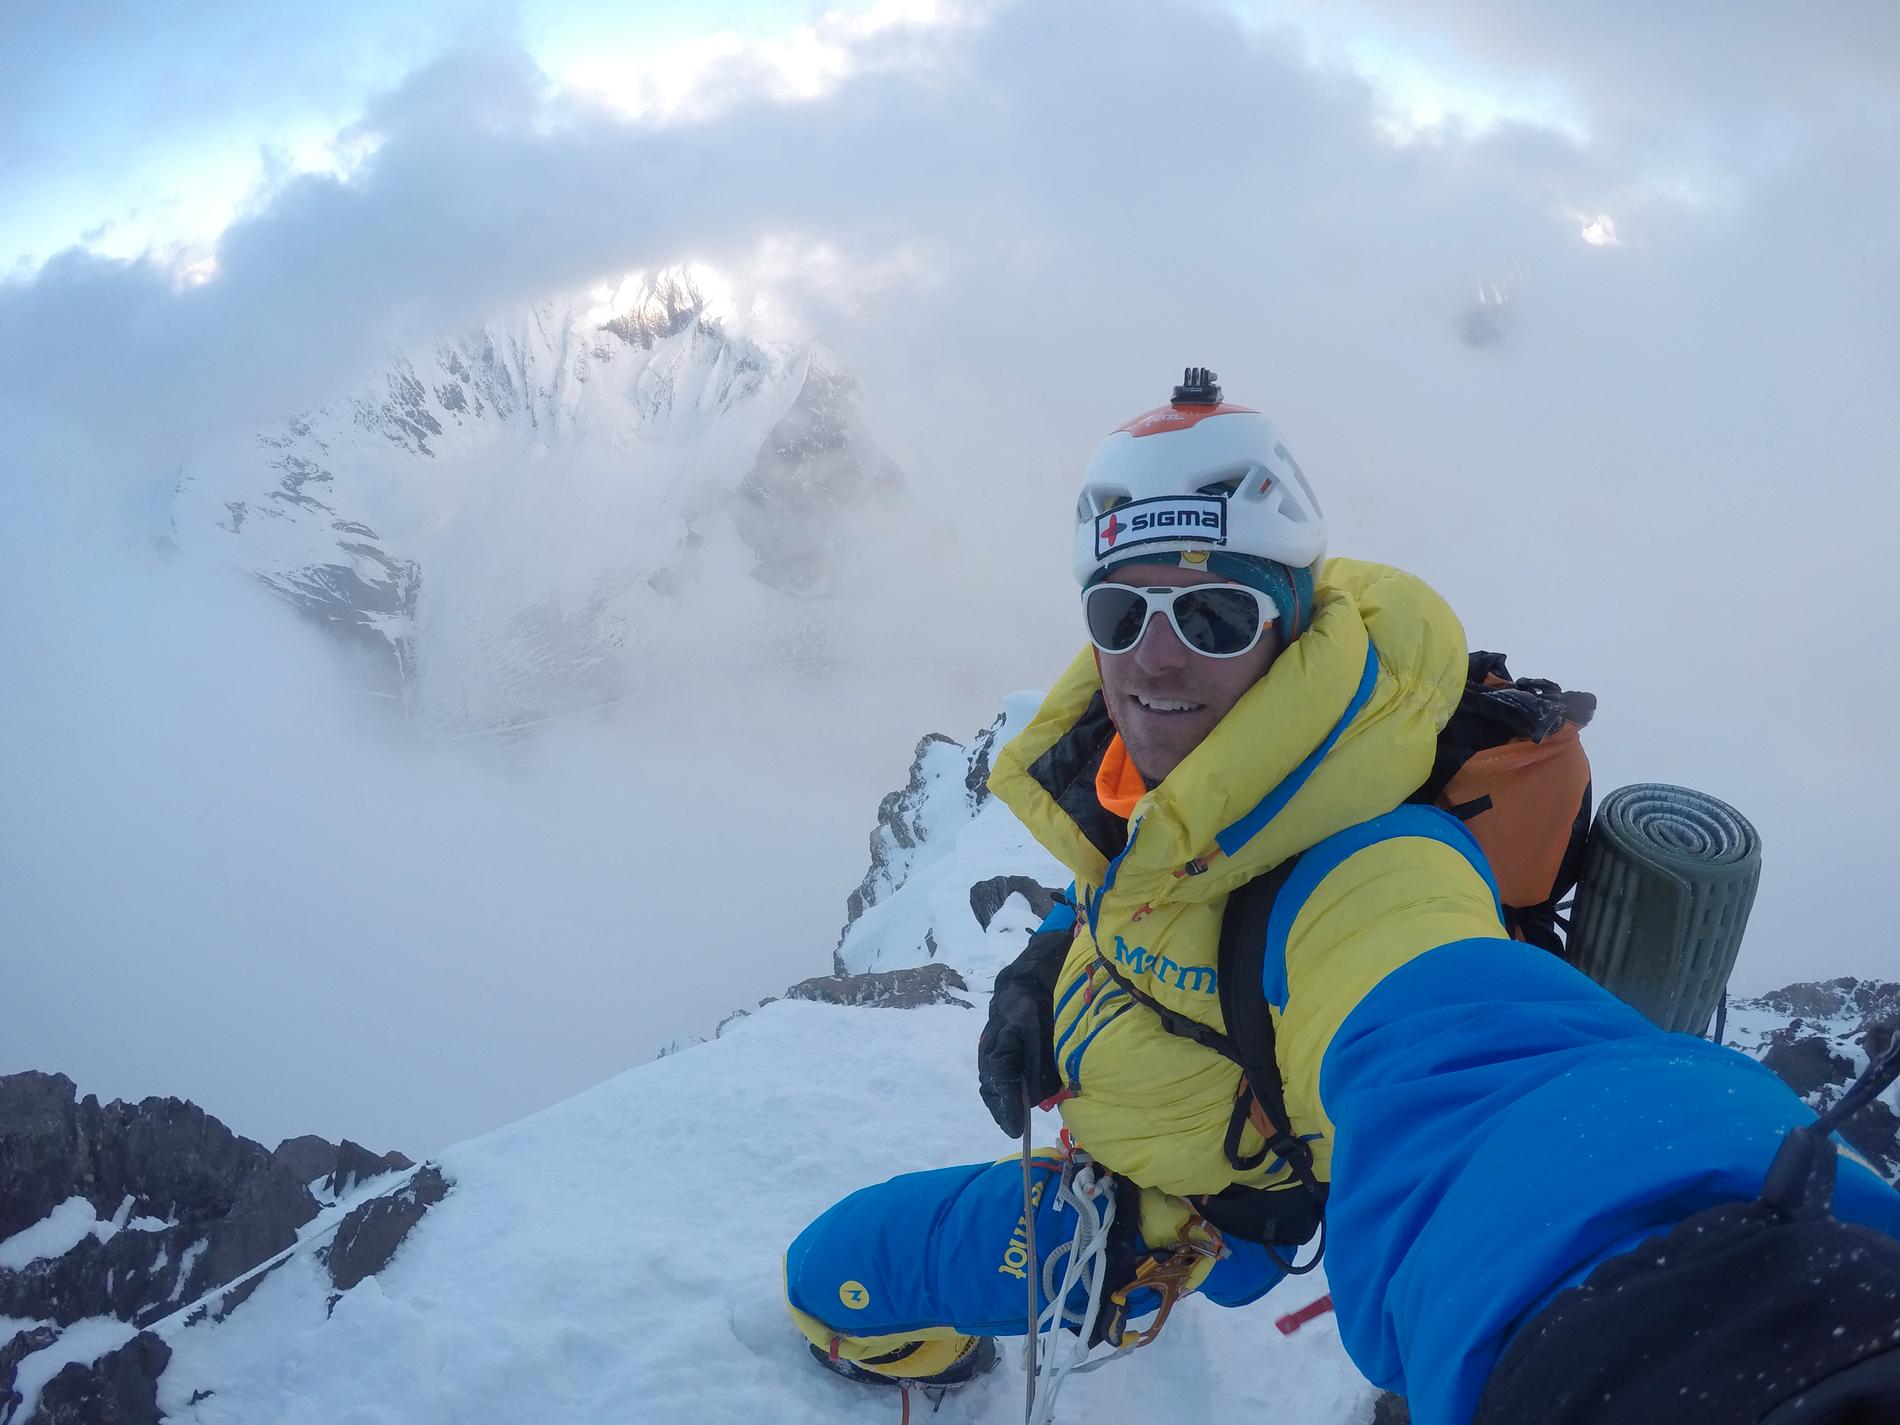 Hit, men inte längre. Fredrik Sträng kom bara några meter högre upp på K2, till 7 400 meter i sommar – Helt sjukt att vi fick regn på 7 000 meter! Det var midjedjup snö där vi vände och noll skikt, så säkerheten framför att nå toppen, säger han.